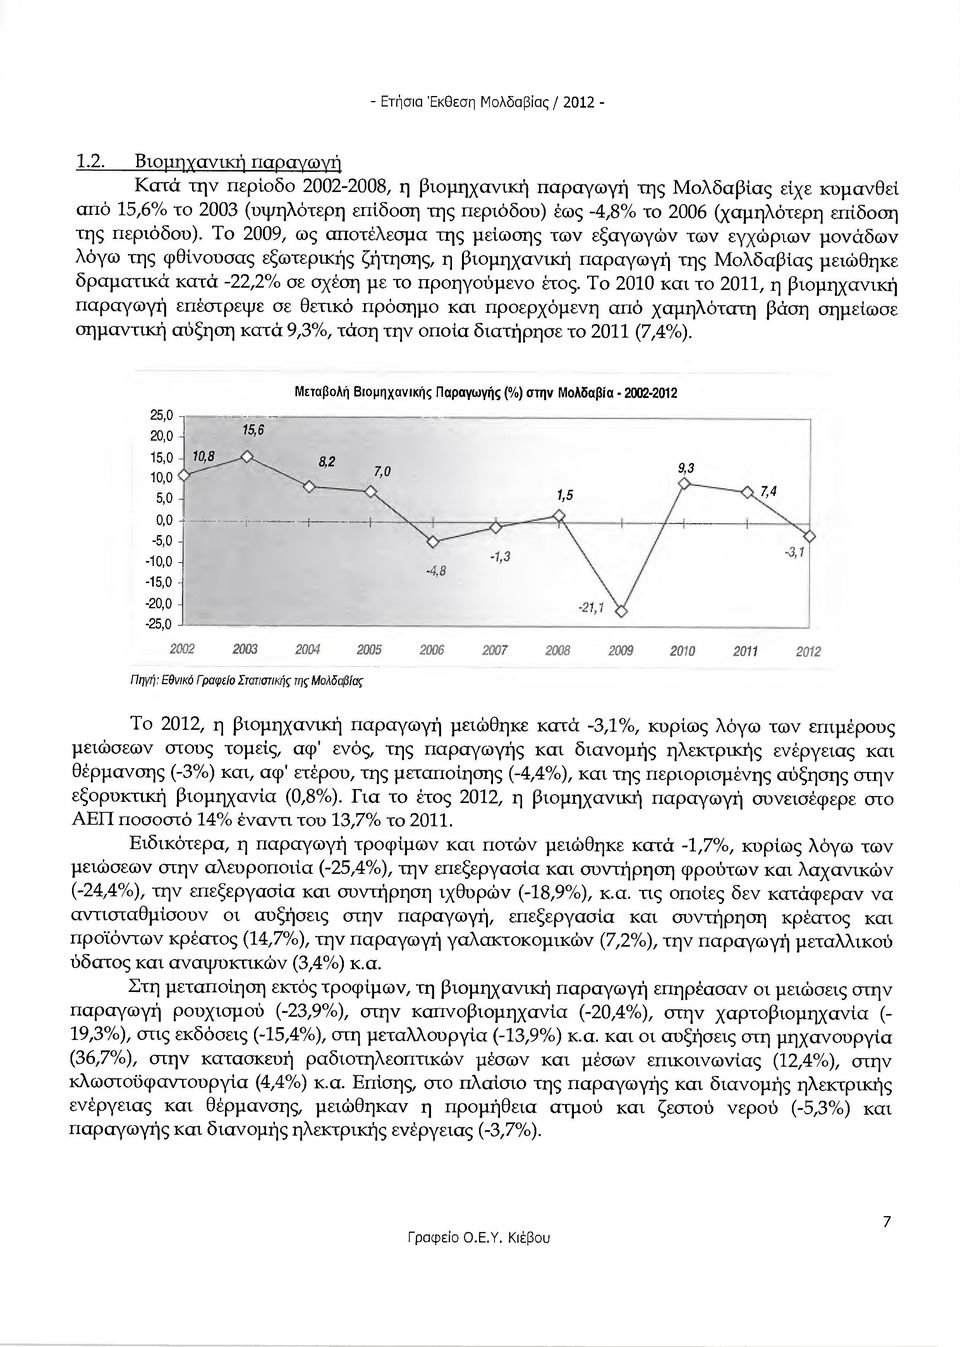 Το 2009, ως αποτέλεσµα της µείωσης των εξαγωγών των εγχώριων µονάδων λόγω της φθίνονσας εξωτερικής ζήτησης, η βιοµηχανική παραγωγή της Μολδαβίας µειώθηκε δραµατικά κατά -22,2% σε σχέση µε το